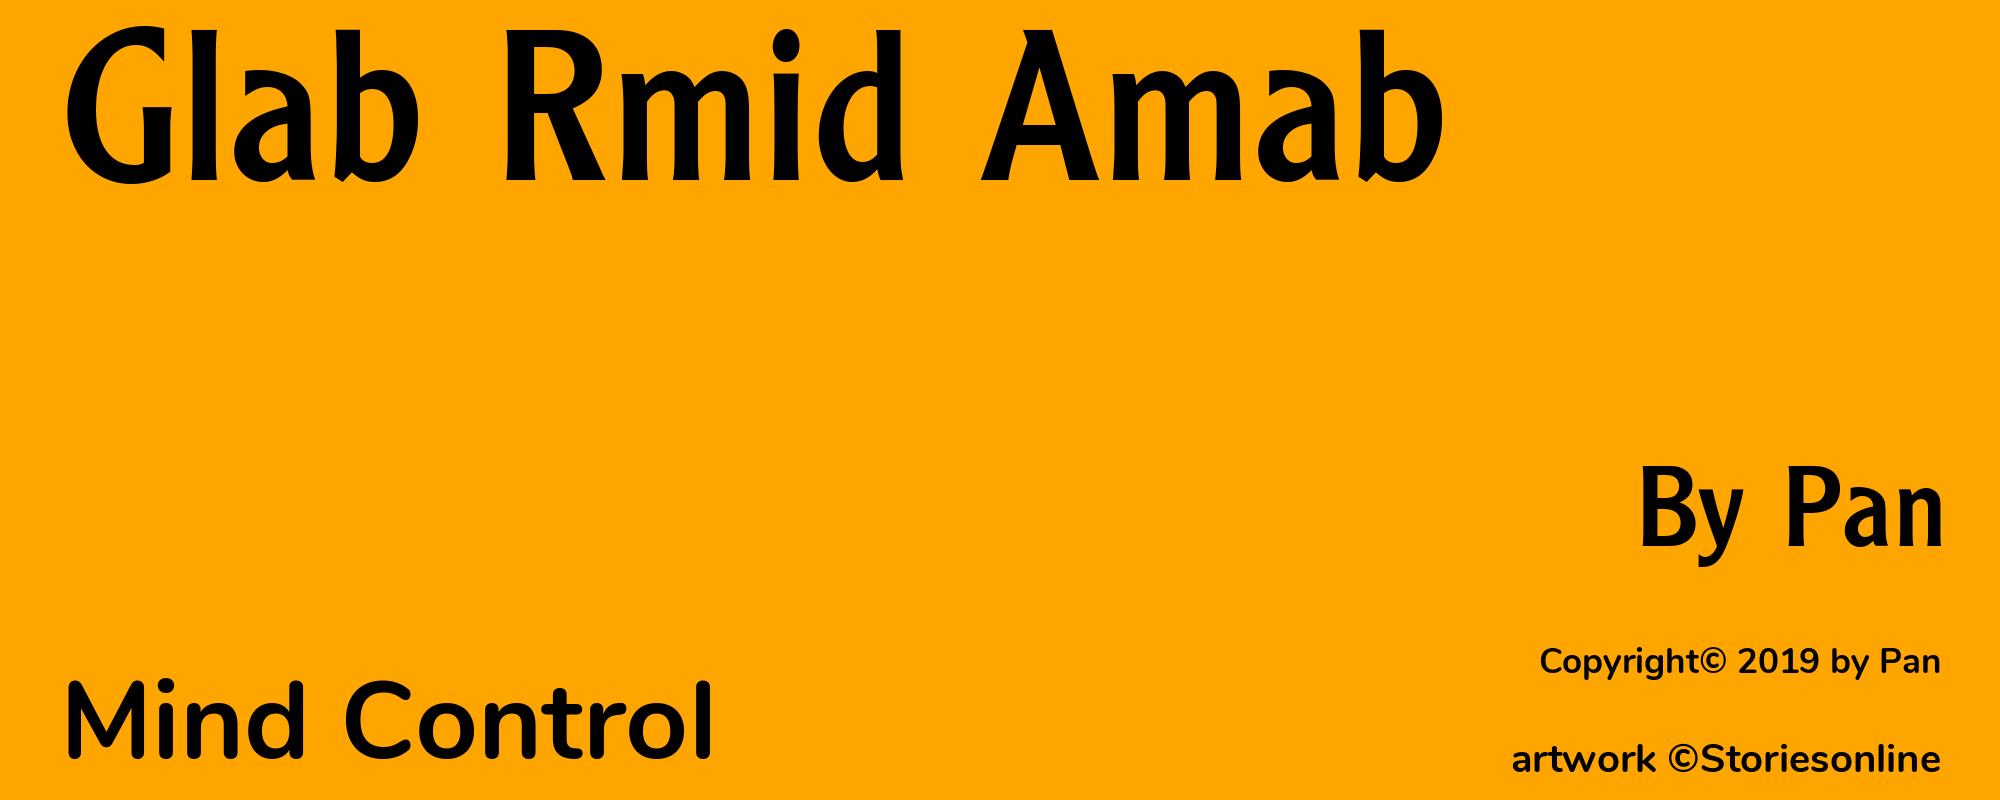 Glab Rmid Amab - Cover